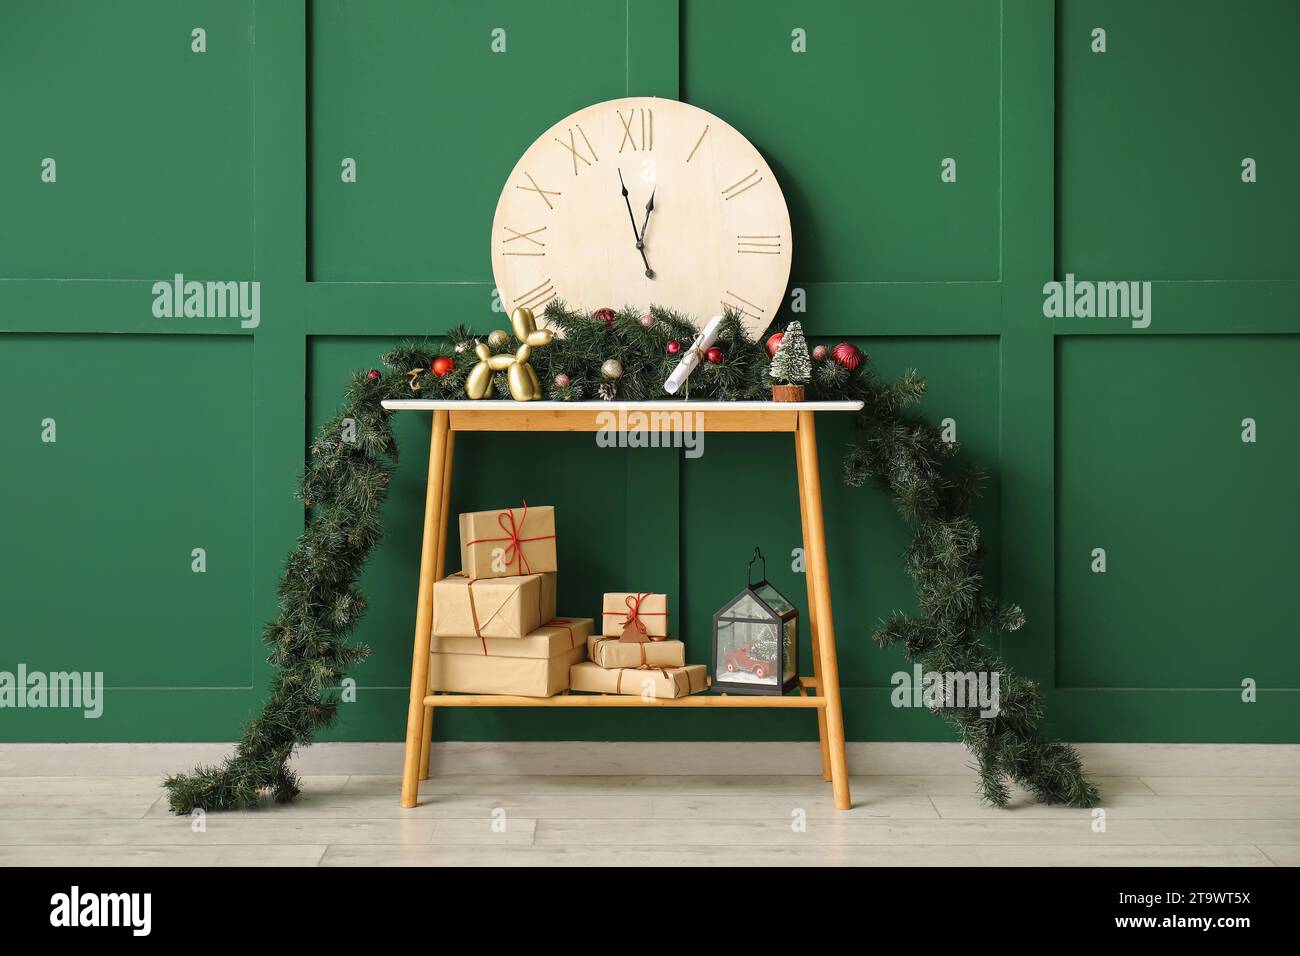 Konsolentisch mit Geschenkboxen, Uhr, Tannenzweigen und weihnachtlicher Einrichtung an der grünen Wand Stockfoto